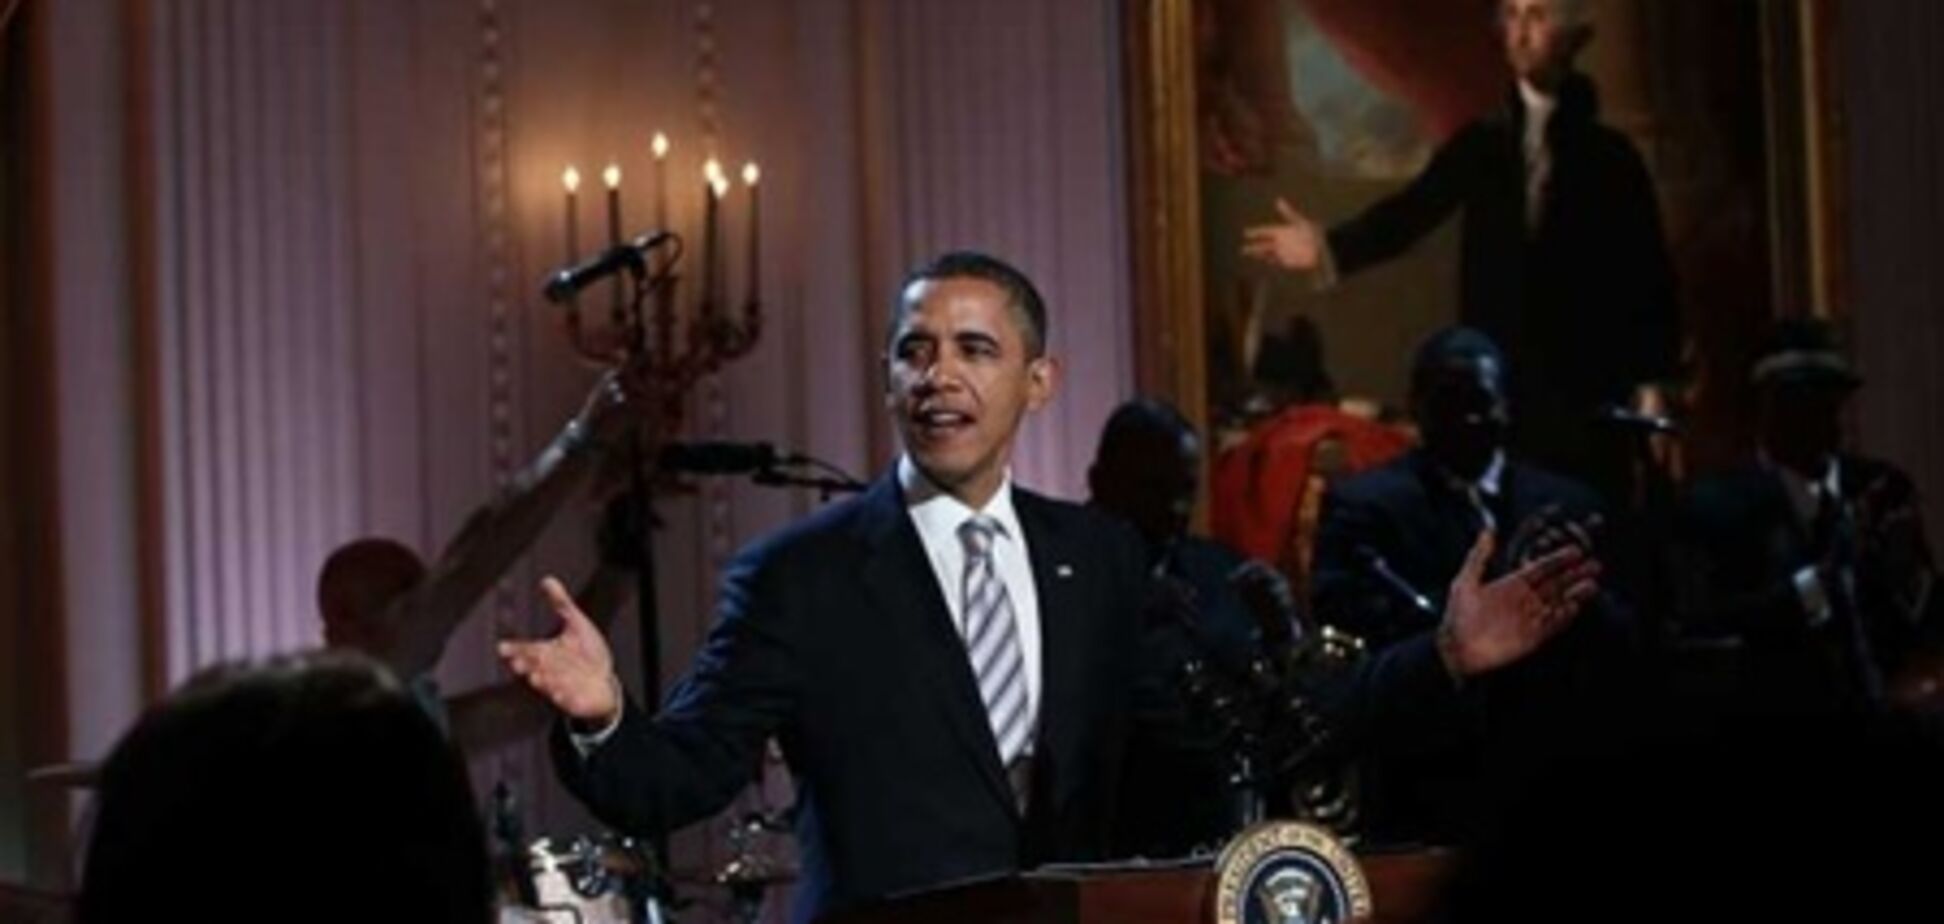 Обама спел блюз с Миком Джаггером. Видео